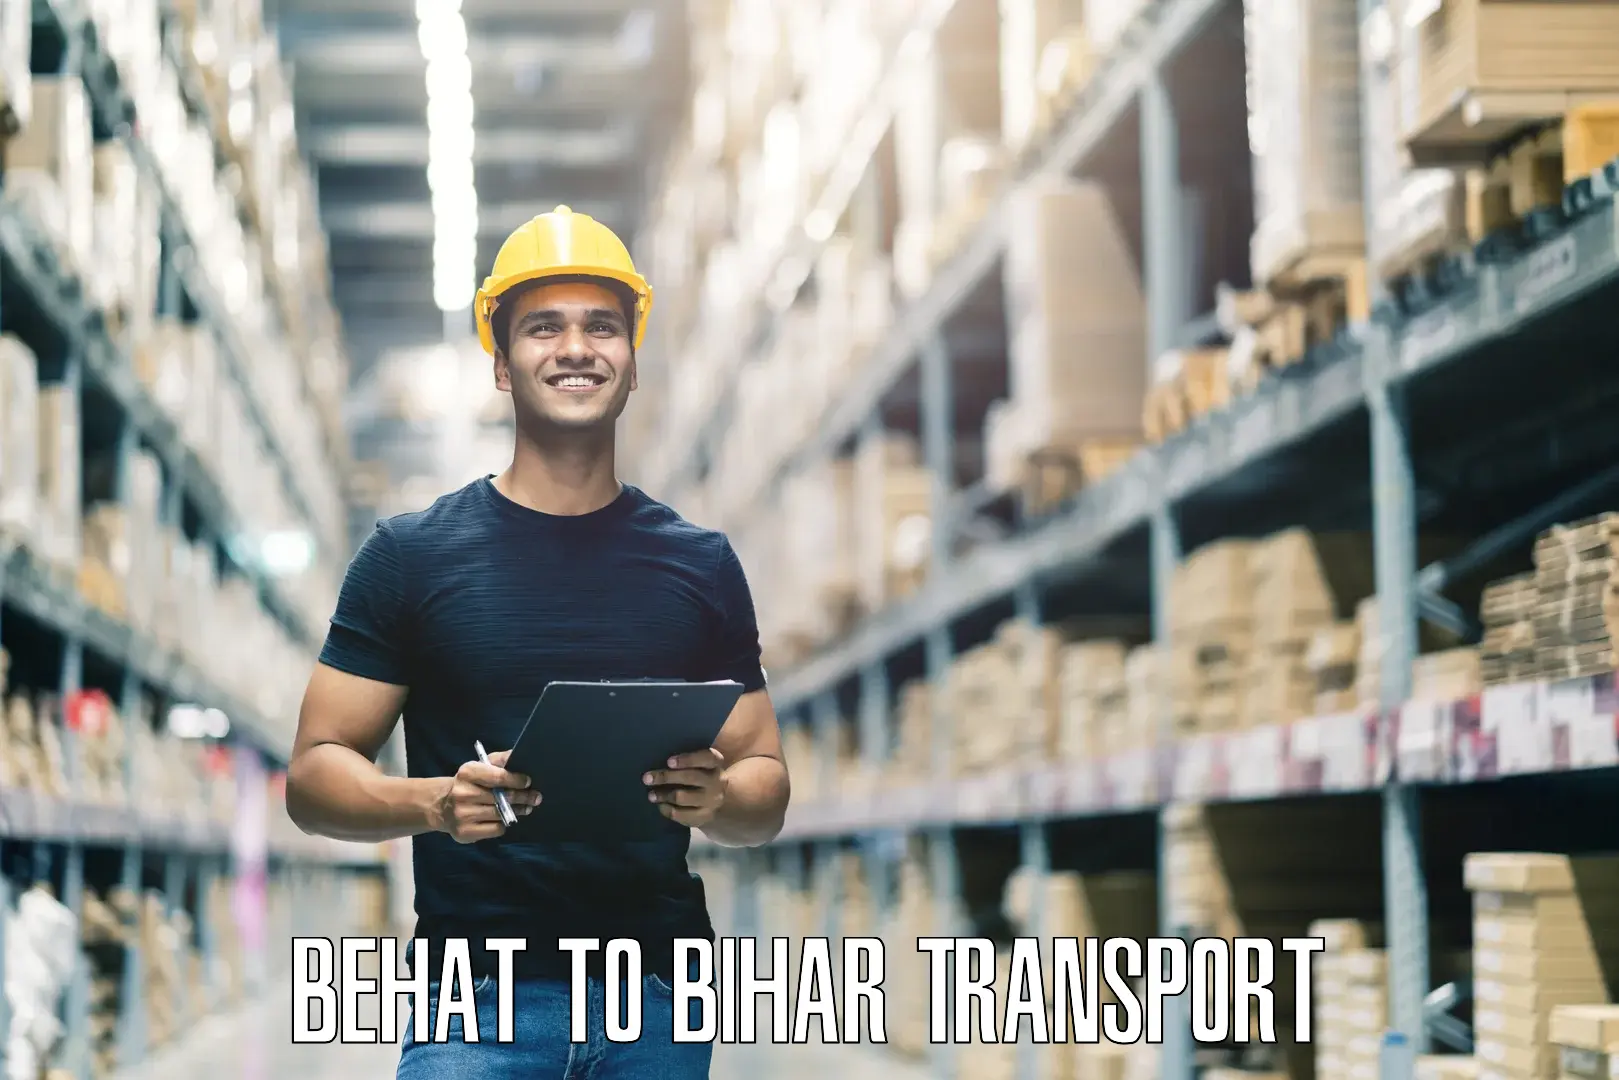 Online transport service Behat to Sheohar